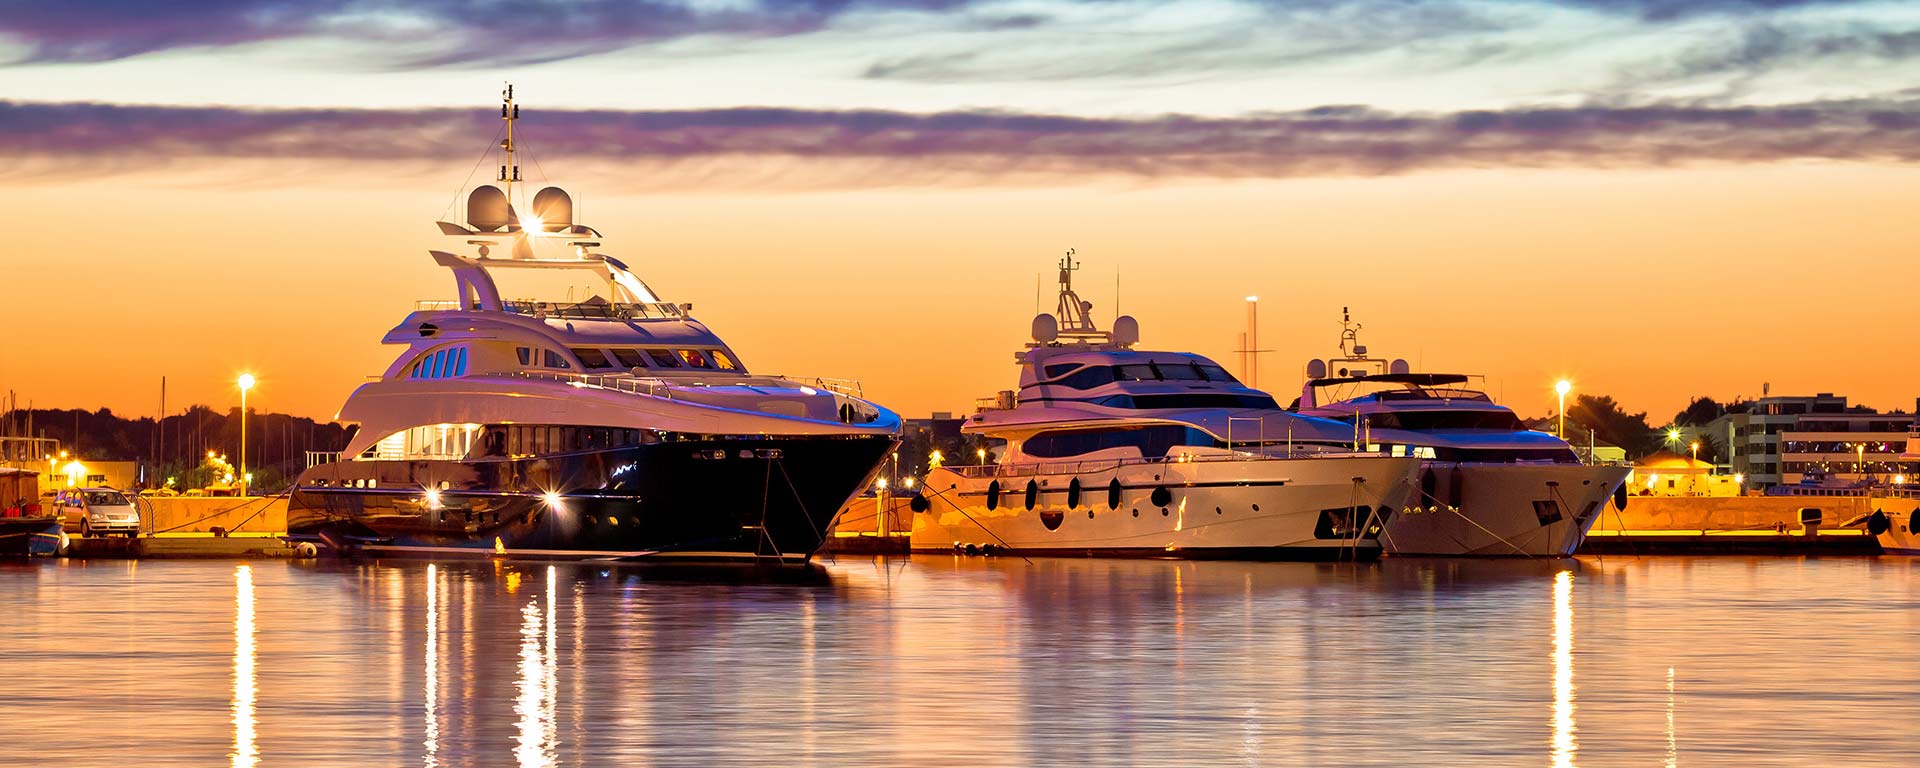 Luxury Yachts under the sunset